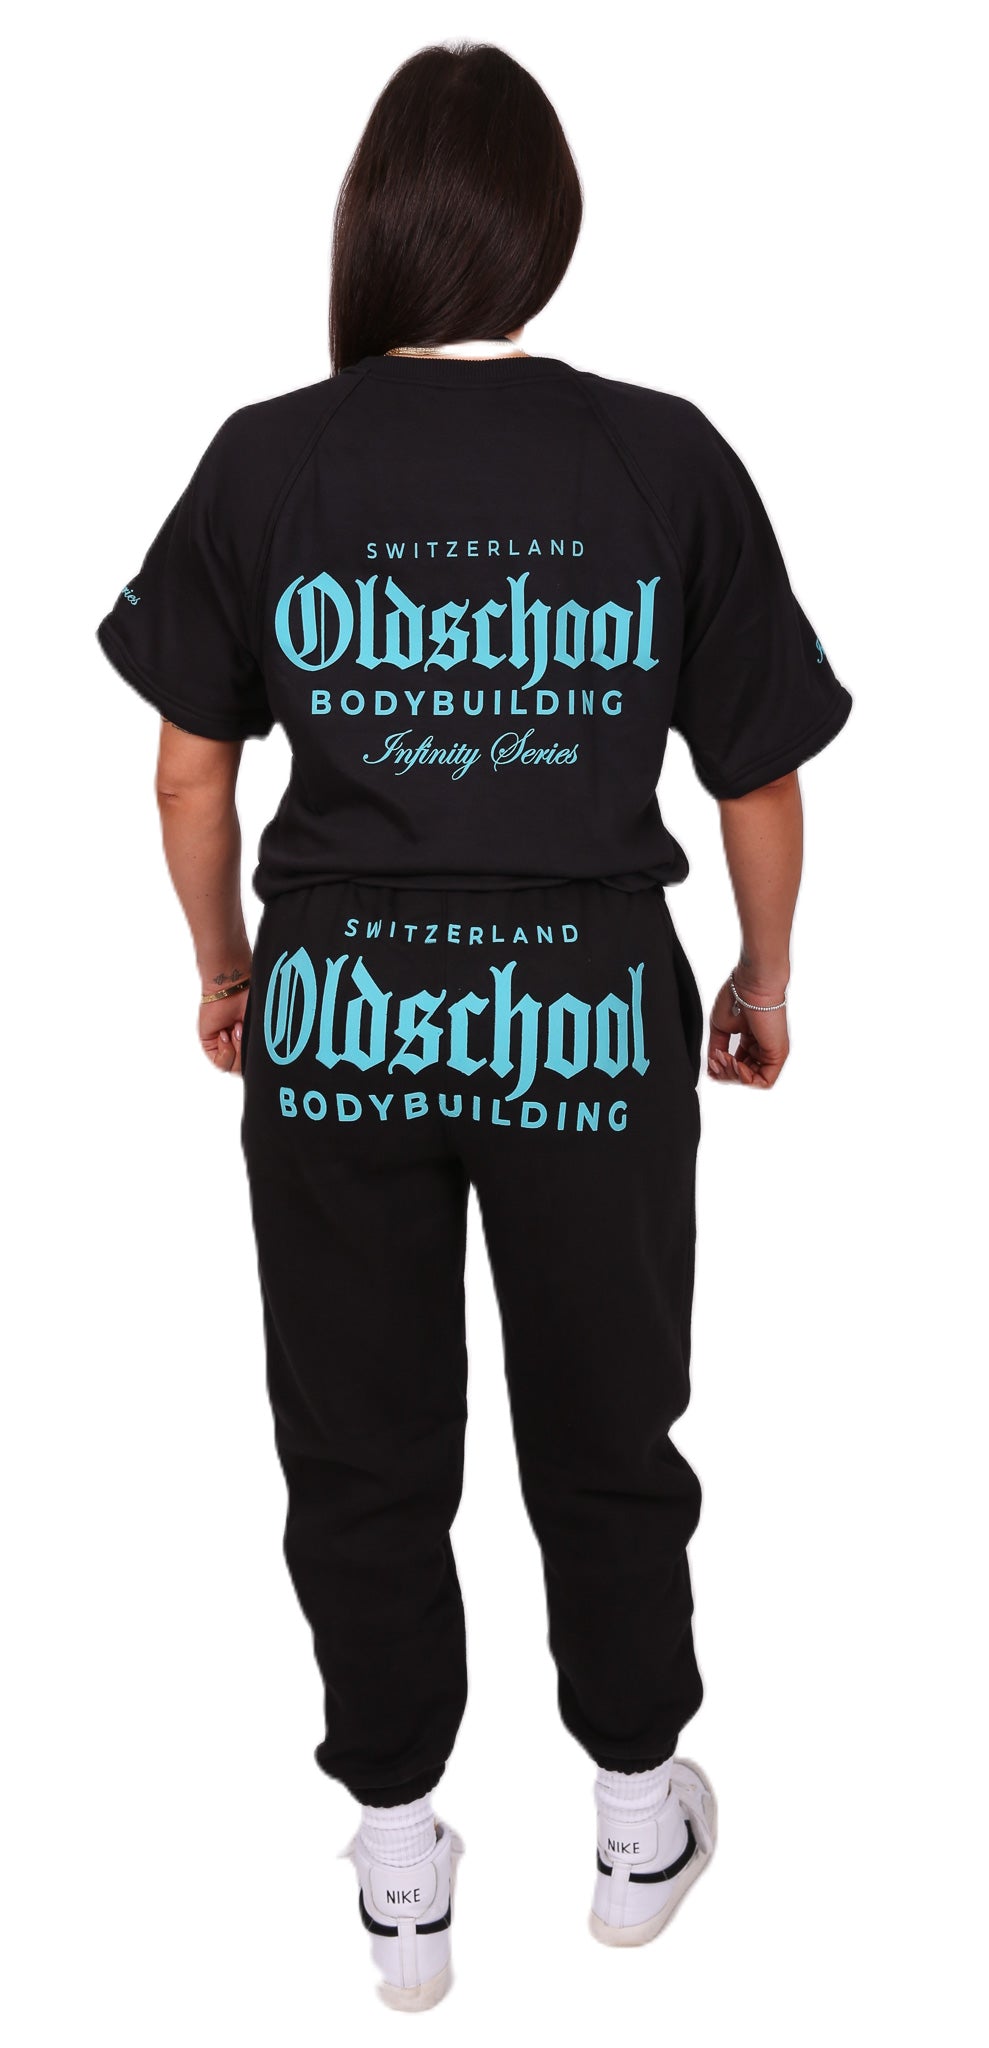 Oldschool Bodybuilding Switzerland Infinity Series Oversized Shirt - Schwarz/Türkis